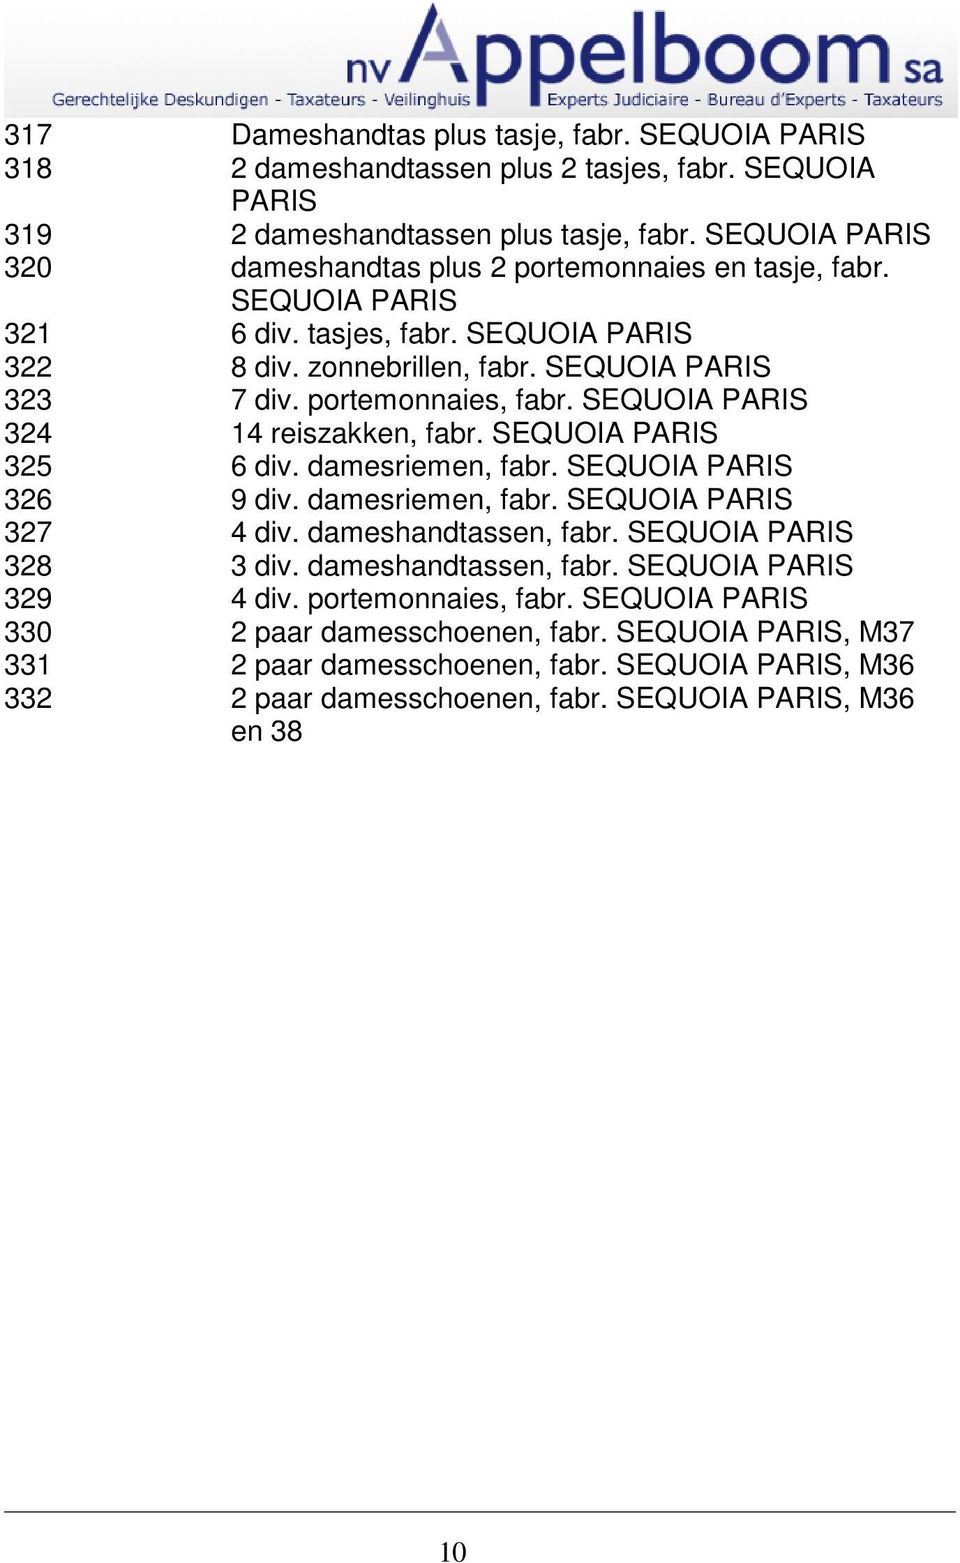 SEQUOIA PARIS 324 14 reiszakken, fabr. SEQUOIA PARIS 325 6 div. damesriemen, fabr. SEQUOIA PARIS 326 9 div. damesriemen, fabr. SEQUOIA PARIS 327 4 div. dameshandtassen, fabr.